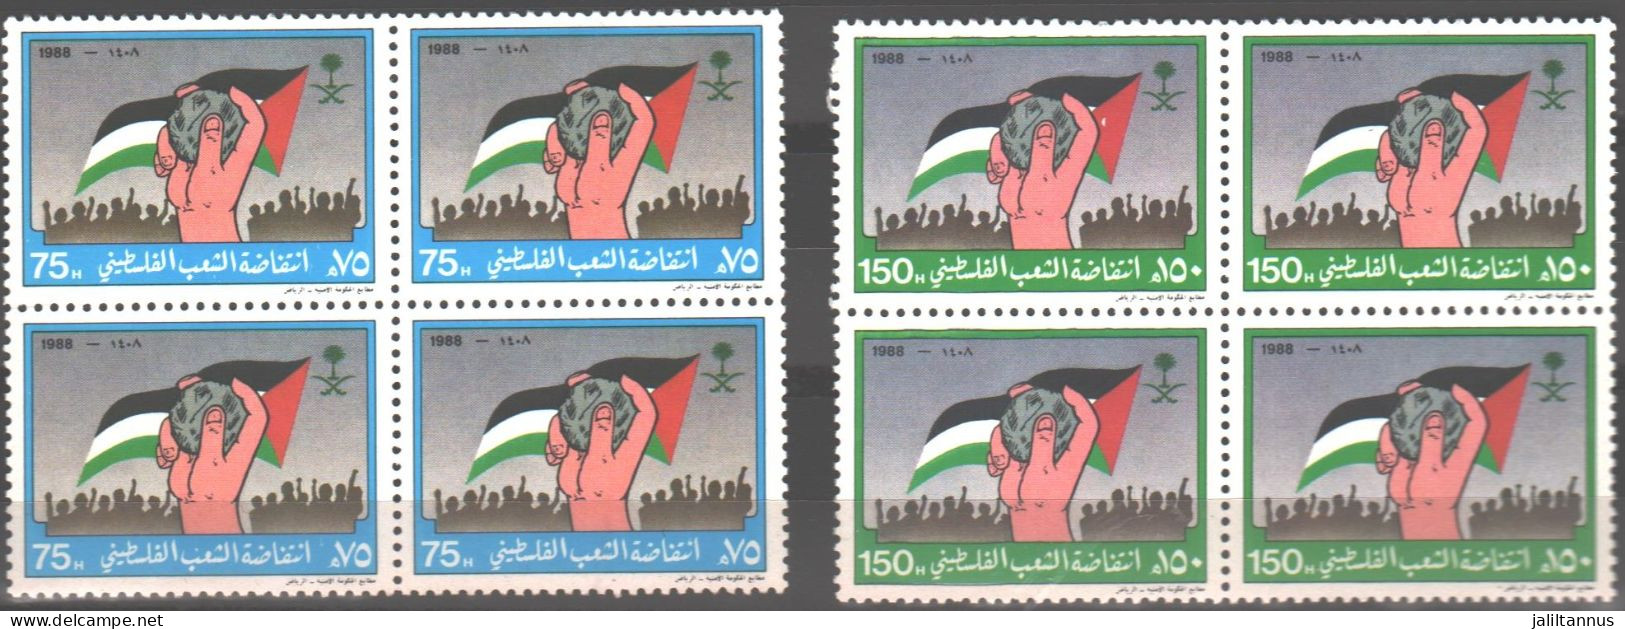 KSA - Intefadh Of The Palestinian People 1988 - Arabie Saoudite